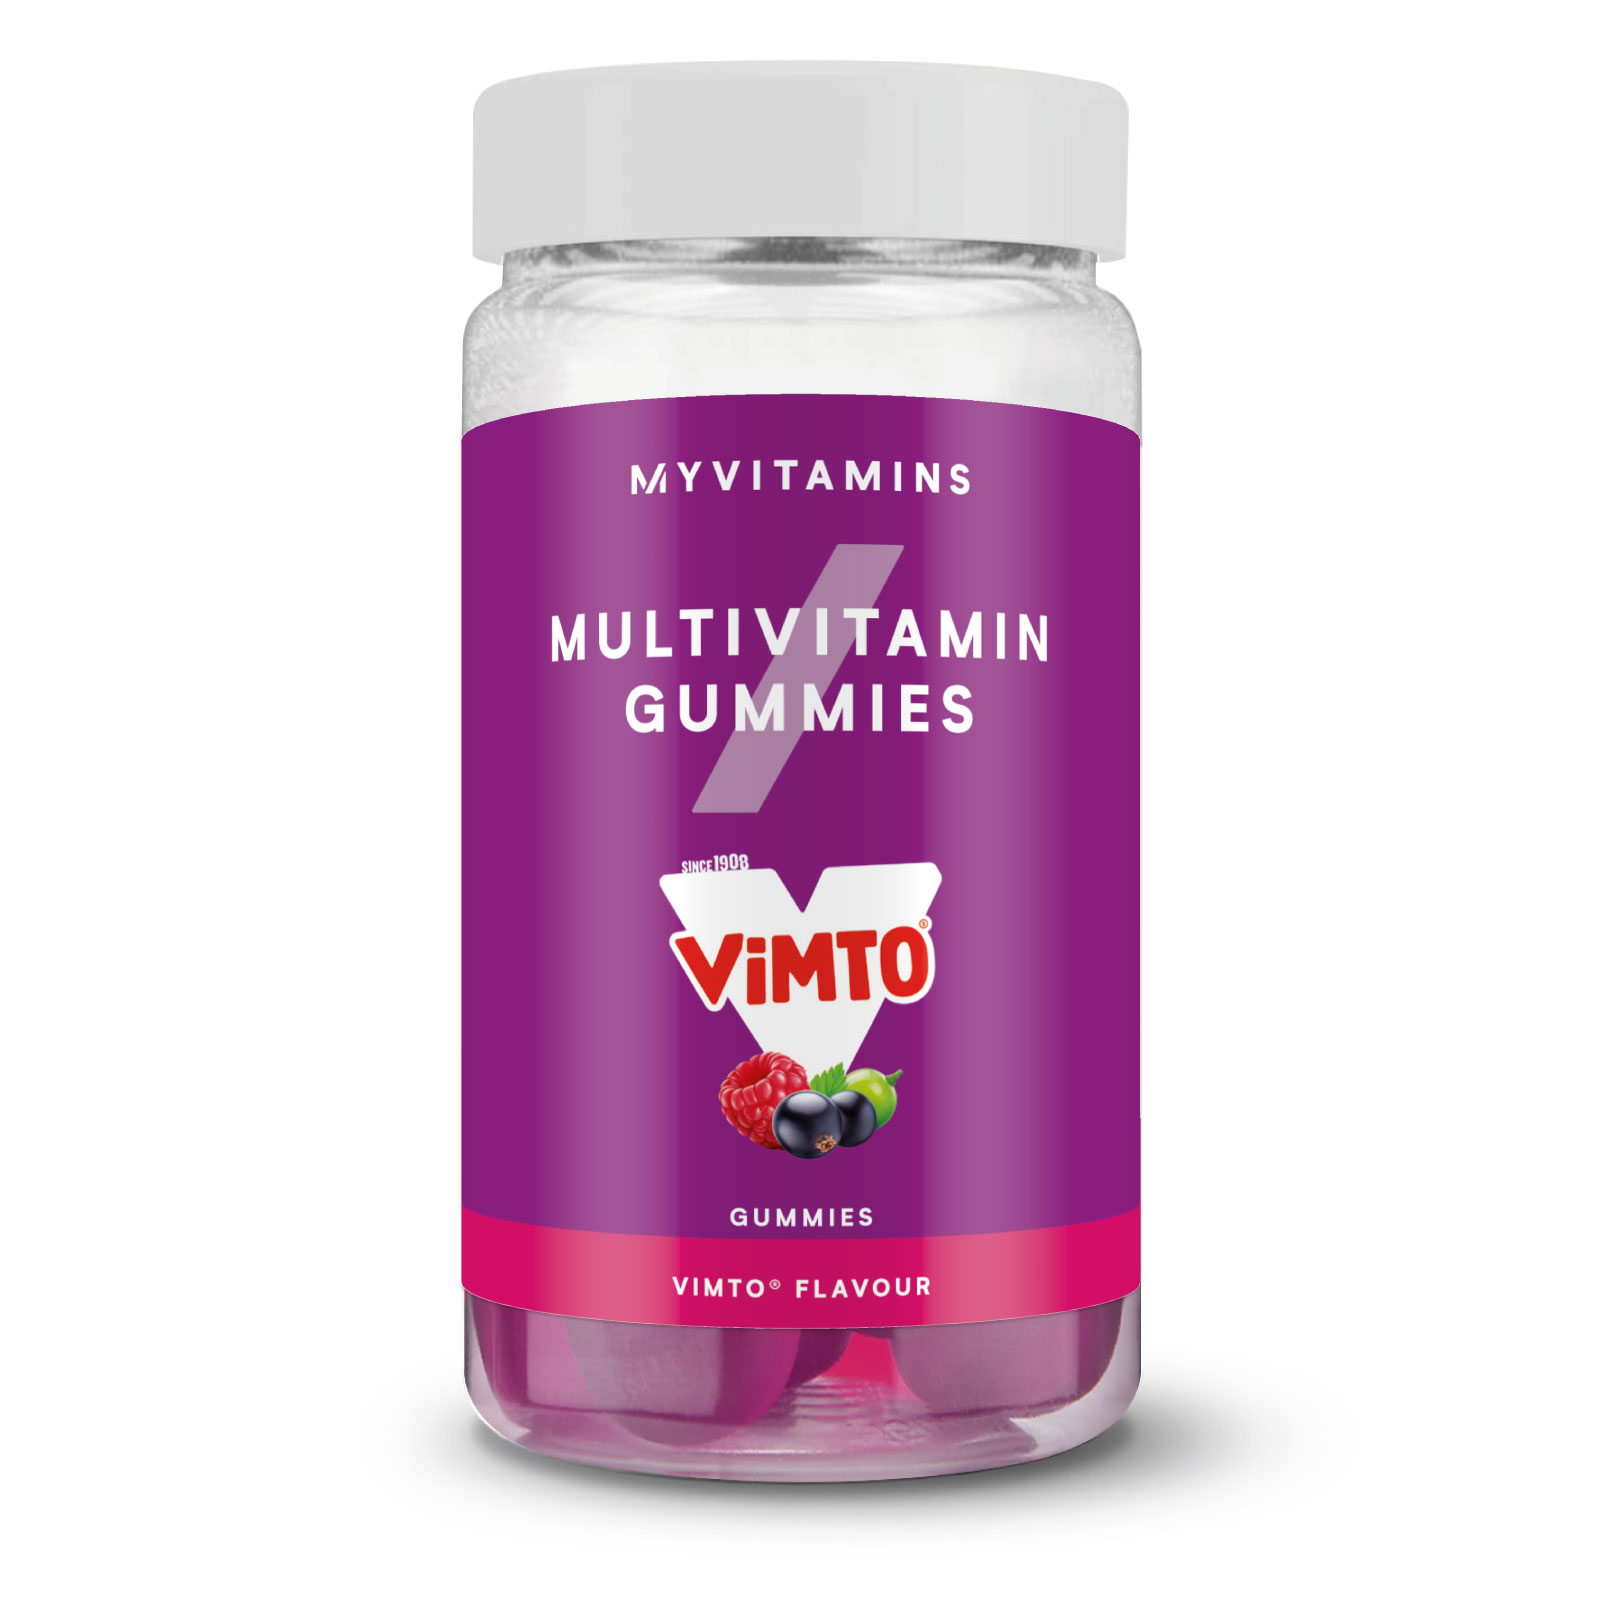 Myprotein UK Myvitamins Multivitamin Gummies - 60gummies - Vimto